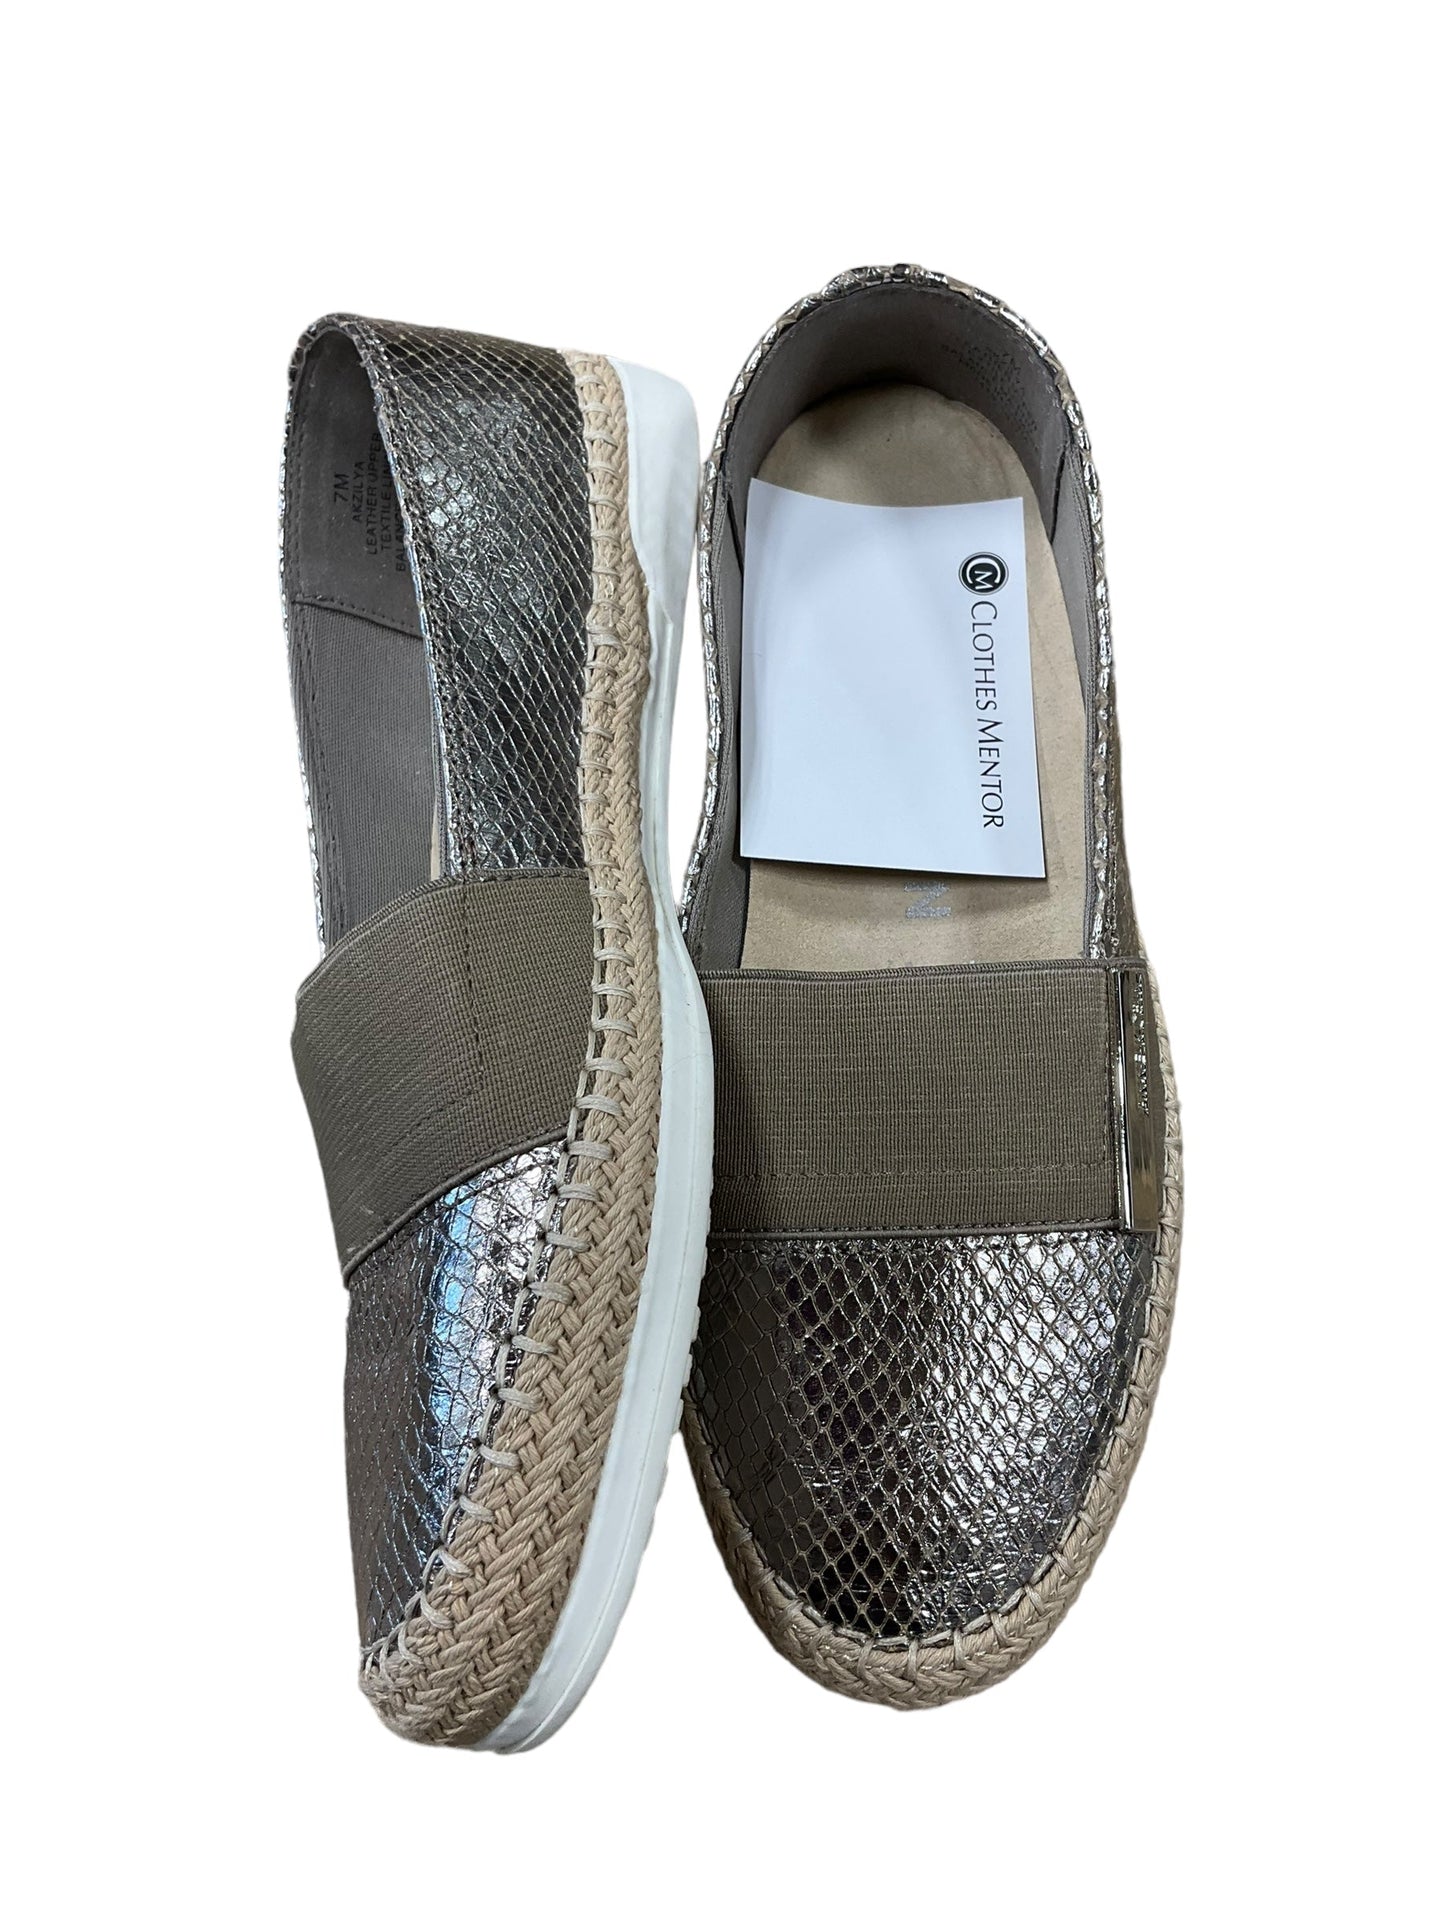 Silver & Tan Shoes Flats Anne Klein, Size 7